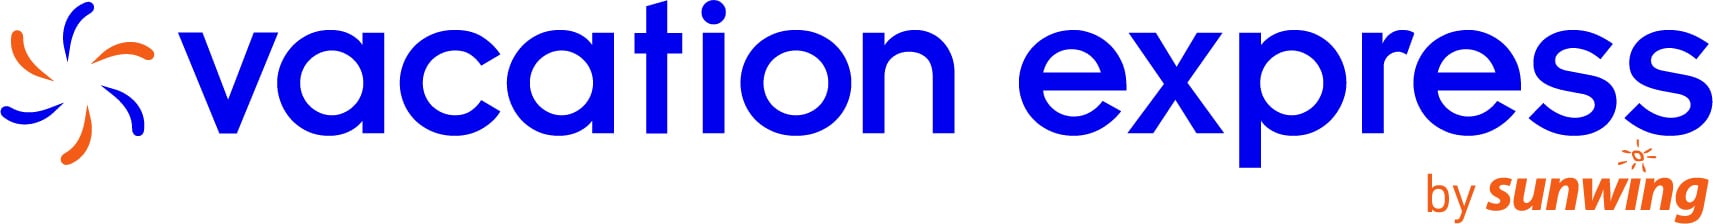 vacation_express_logo image